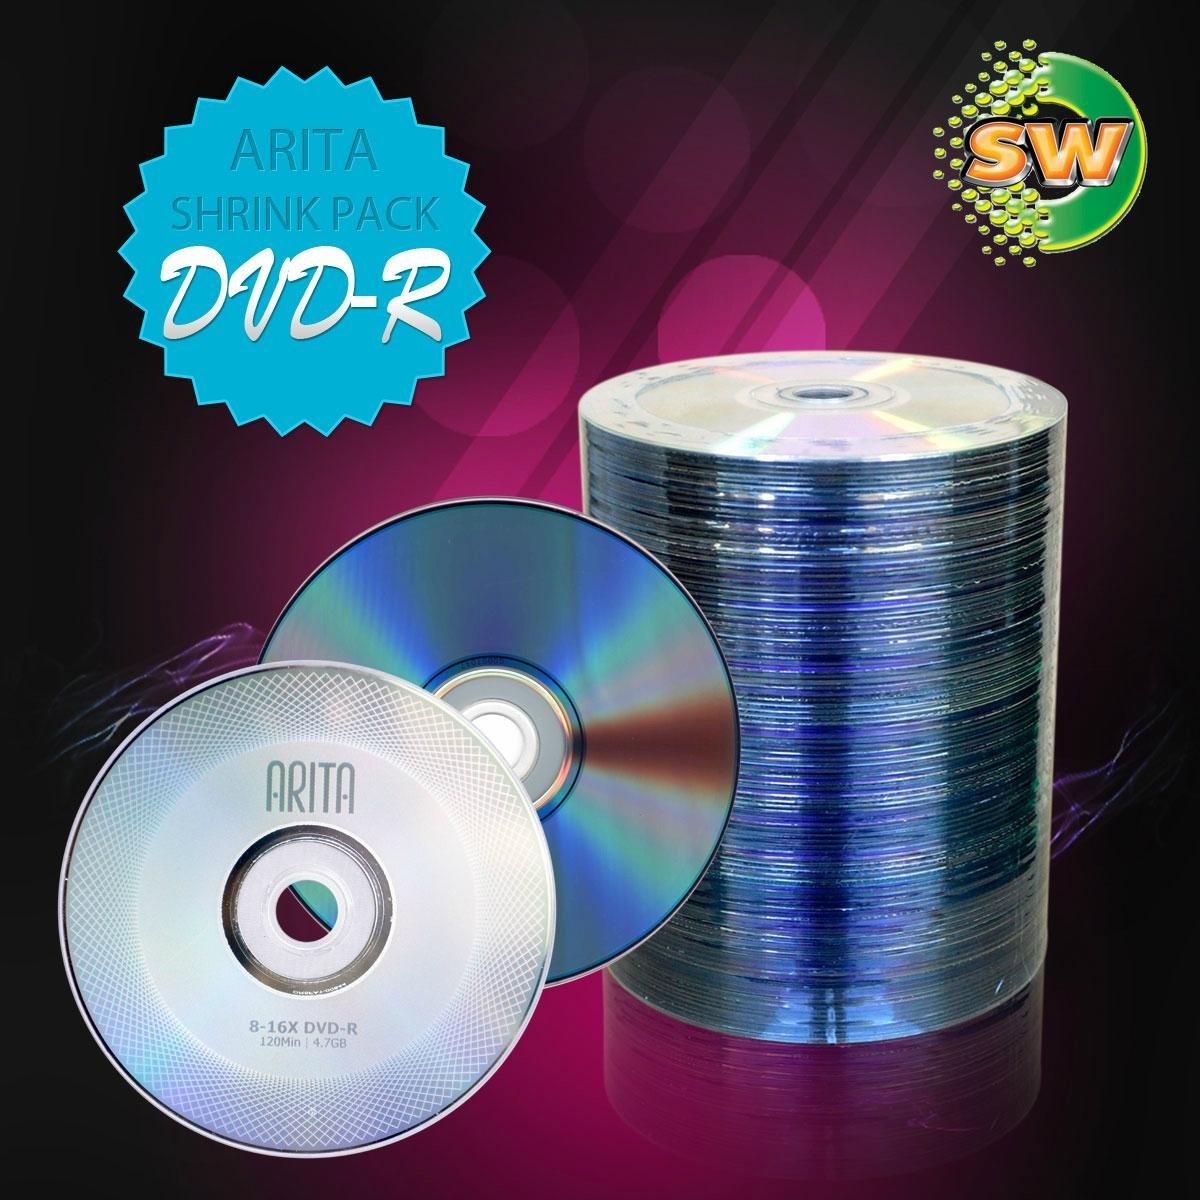 (Stocks) DVD-R RiDATA & ARITA 4.7GB 16X/120min (100 Shrink Pack) - TAIWAN 2